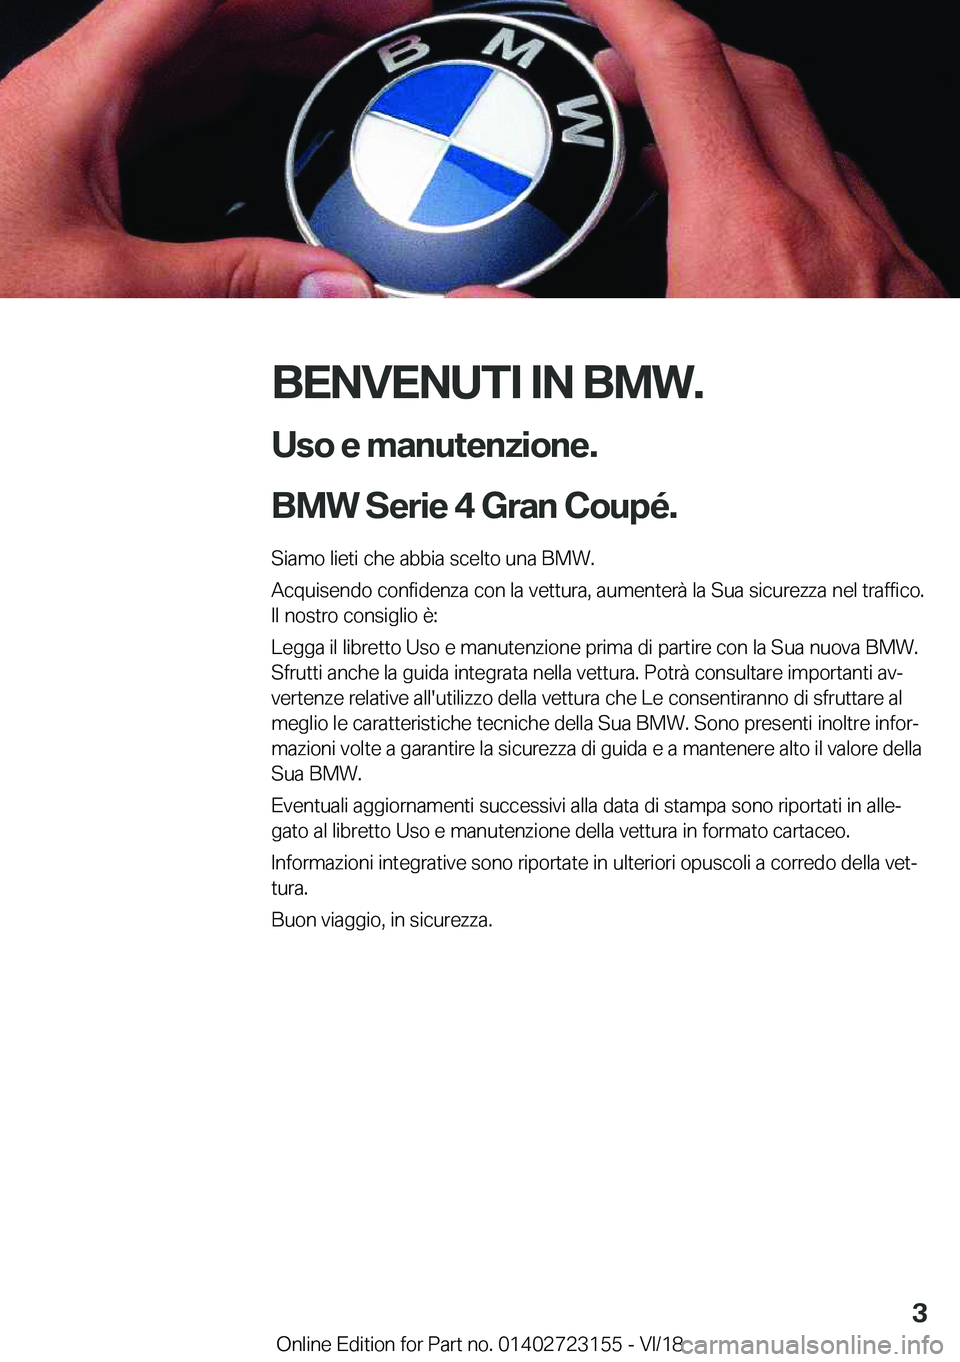 BMW 4 SERIES GRAN COUPE 2019  Libretti Di Uso E manutenzione (in Italian) �B�E�N�V�E�N�U�T�I��I�N��B�M�W�.�U�s�o��e��m�a�n�u�t�e�n�z�i�o�n�e�.
�B�M�W��S�e�r�i�e��4��G�r�a�n��C�o�u�p�é�.�
�S�i�a�m�o��l�i�e�t�i��c�h�e��a�b�b�i�a��s�c�e�l�t�o��u�n�a��B�M�W�.
�A